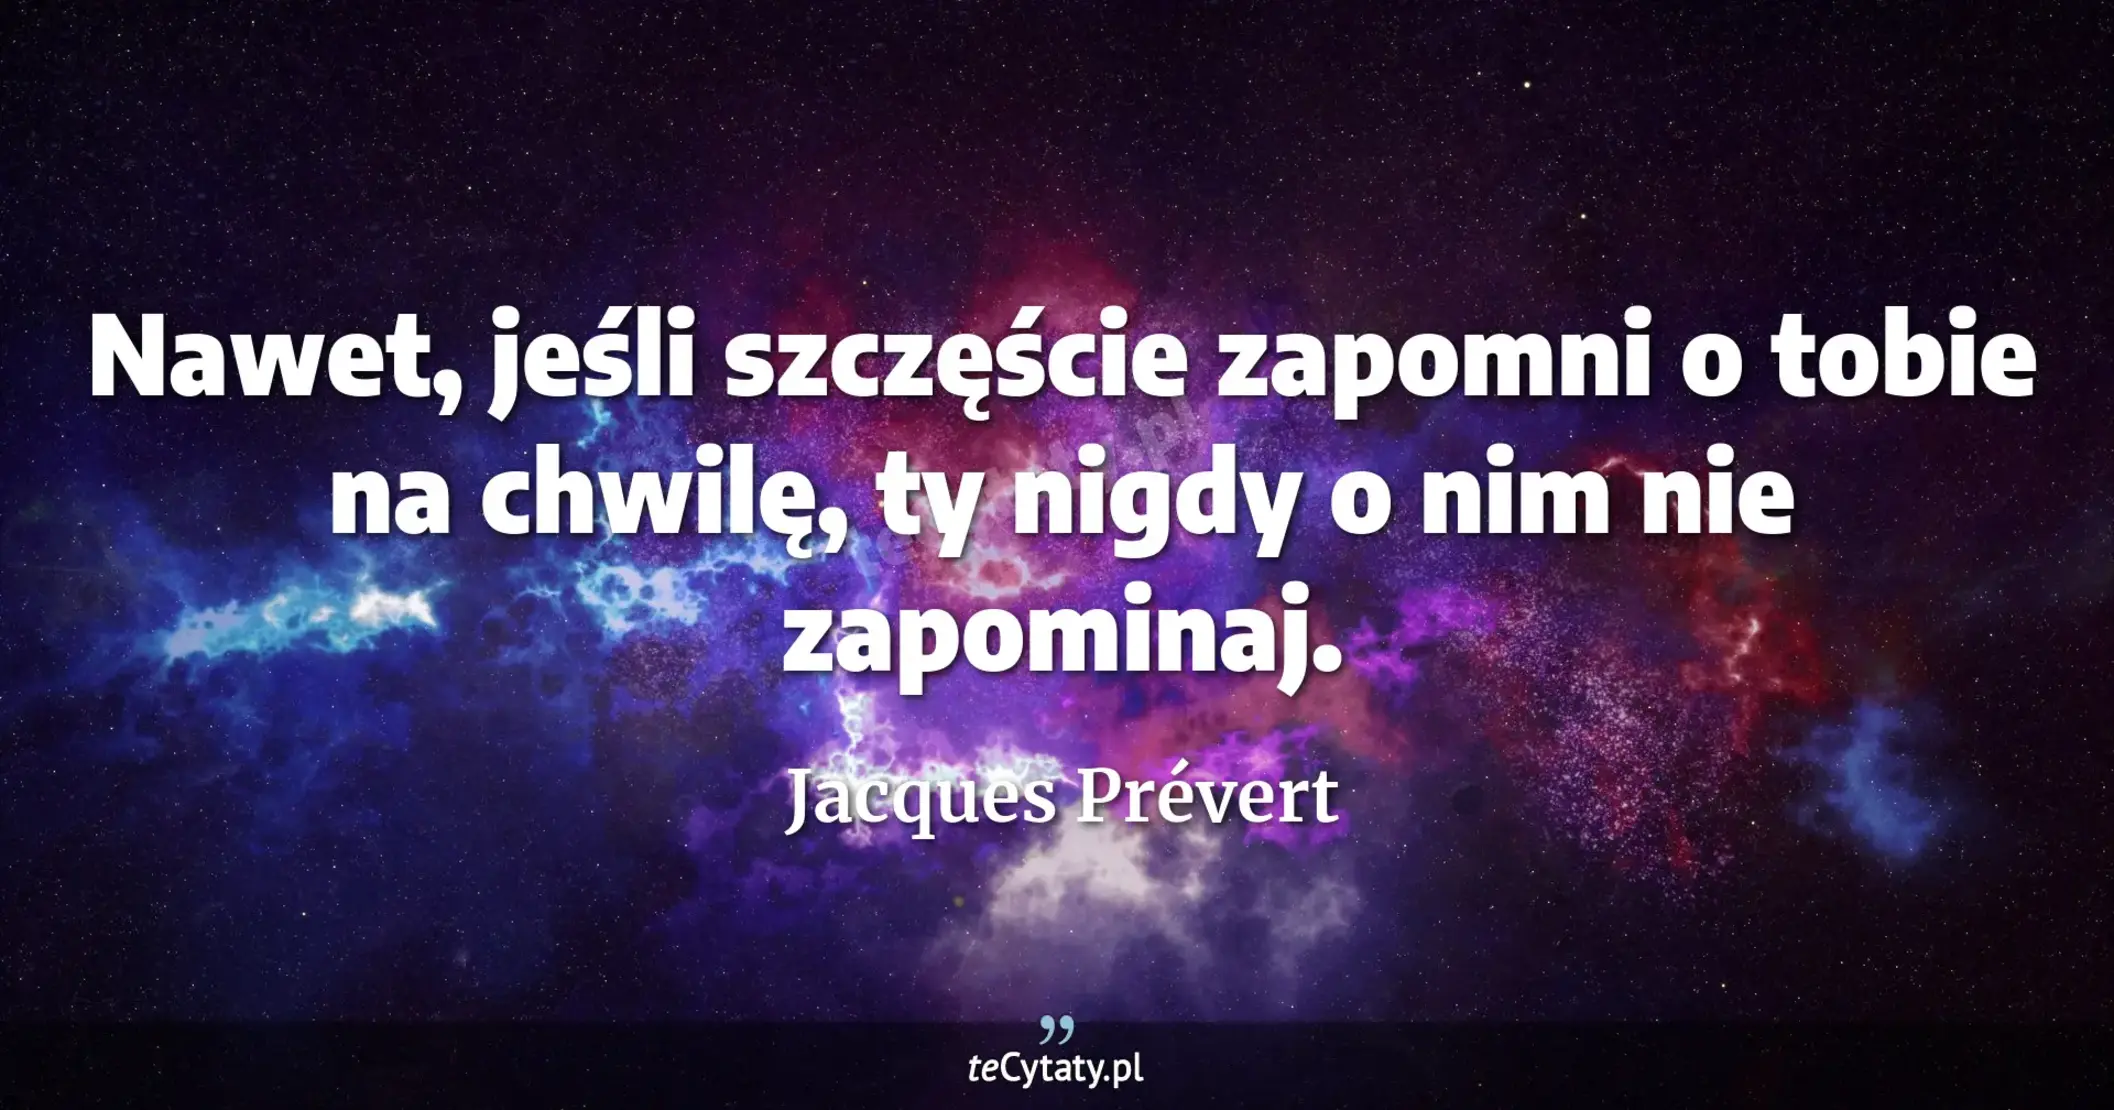 Nawet, jeśli szczęście zapomni o tobie na chwilę, ty nigdy o nim nie zapominaj. - Jacques Prévert